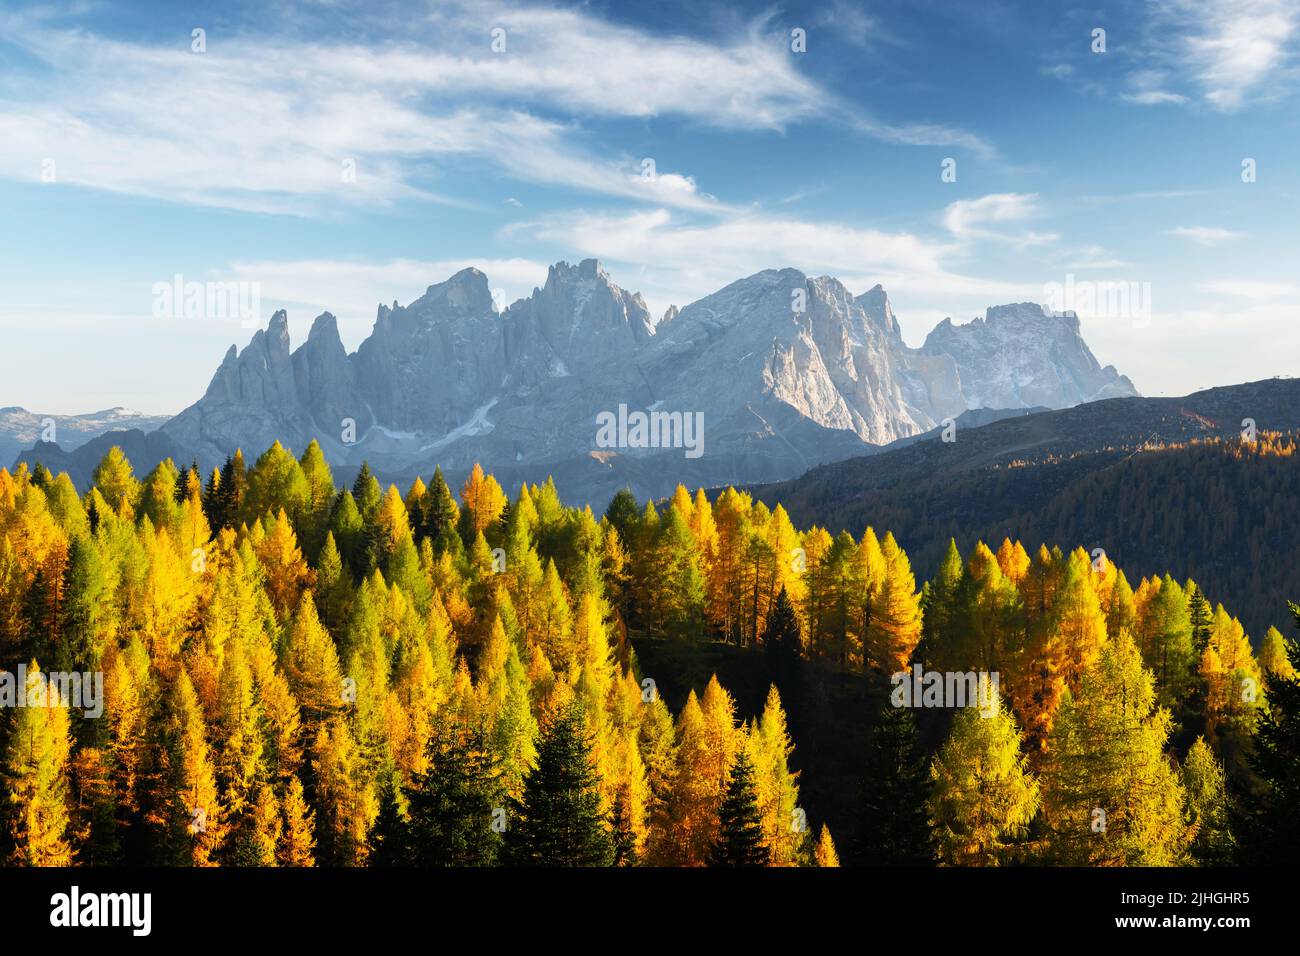 Unglaublicher Herbstblick im Valfreda-Tal in den italienischen Dolomiten. Gelbe und orange Lärchen Wald und schneebedeckte Berge Gipfel auf dem Hintergrund. Dolomiten, Italien. Landschaftsfotografie Stockfoto